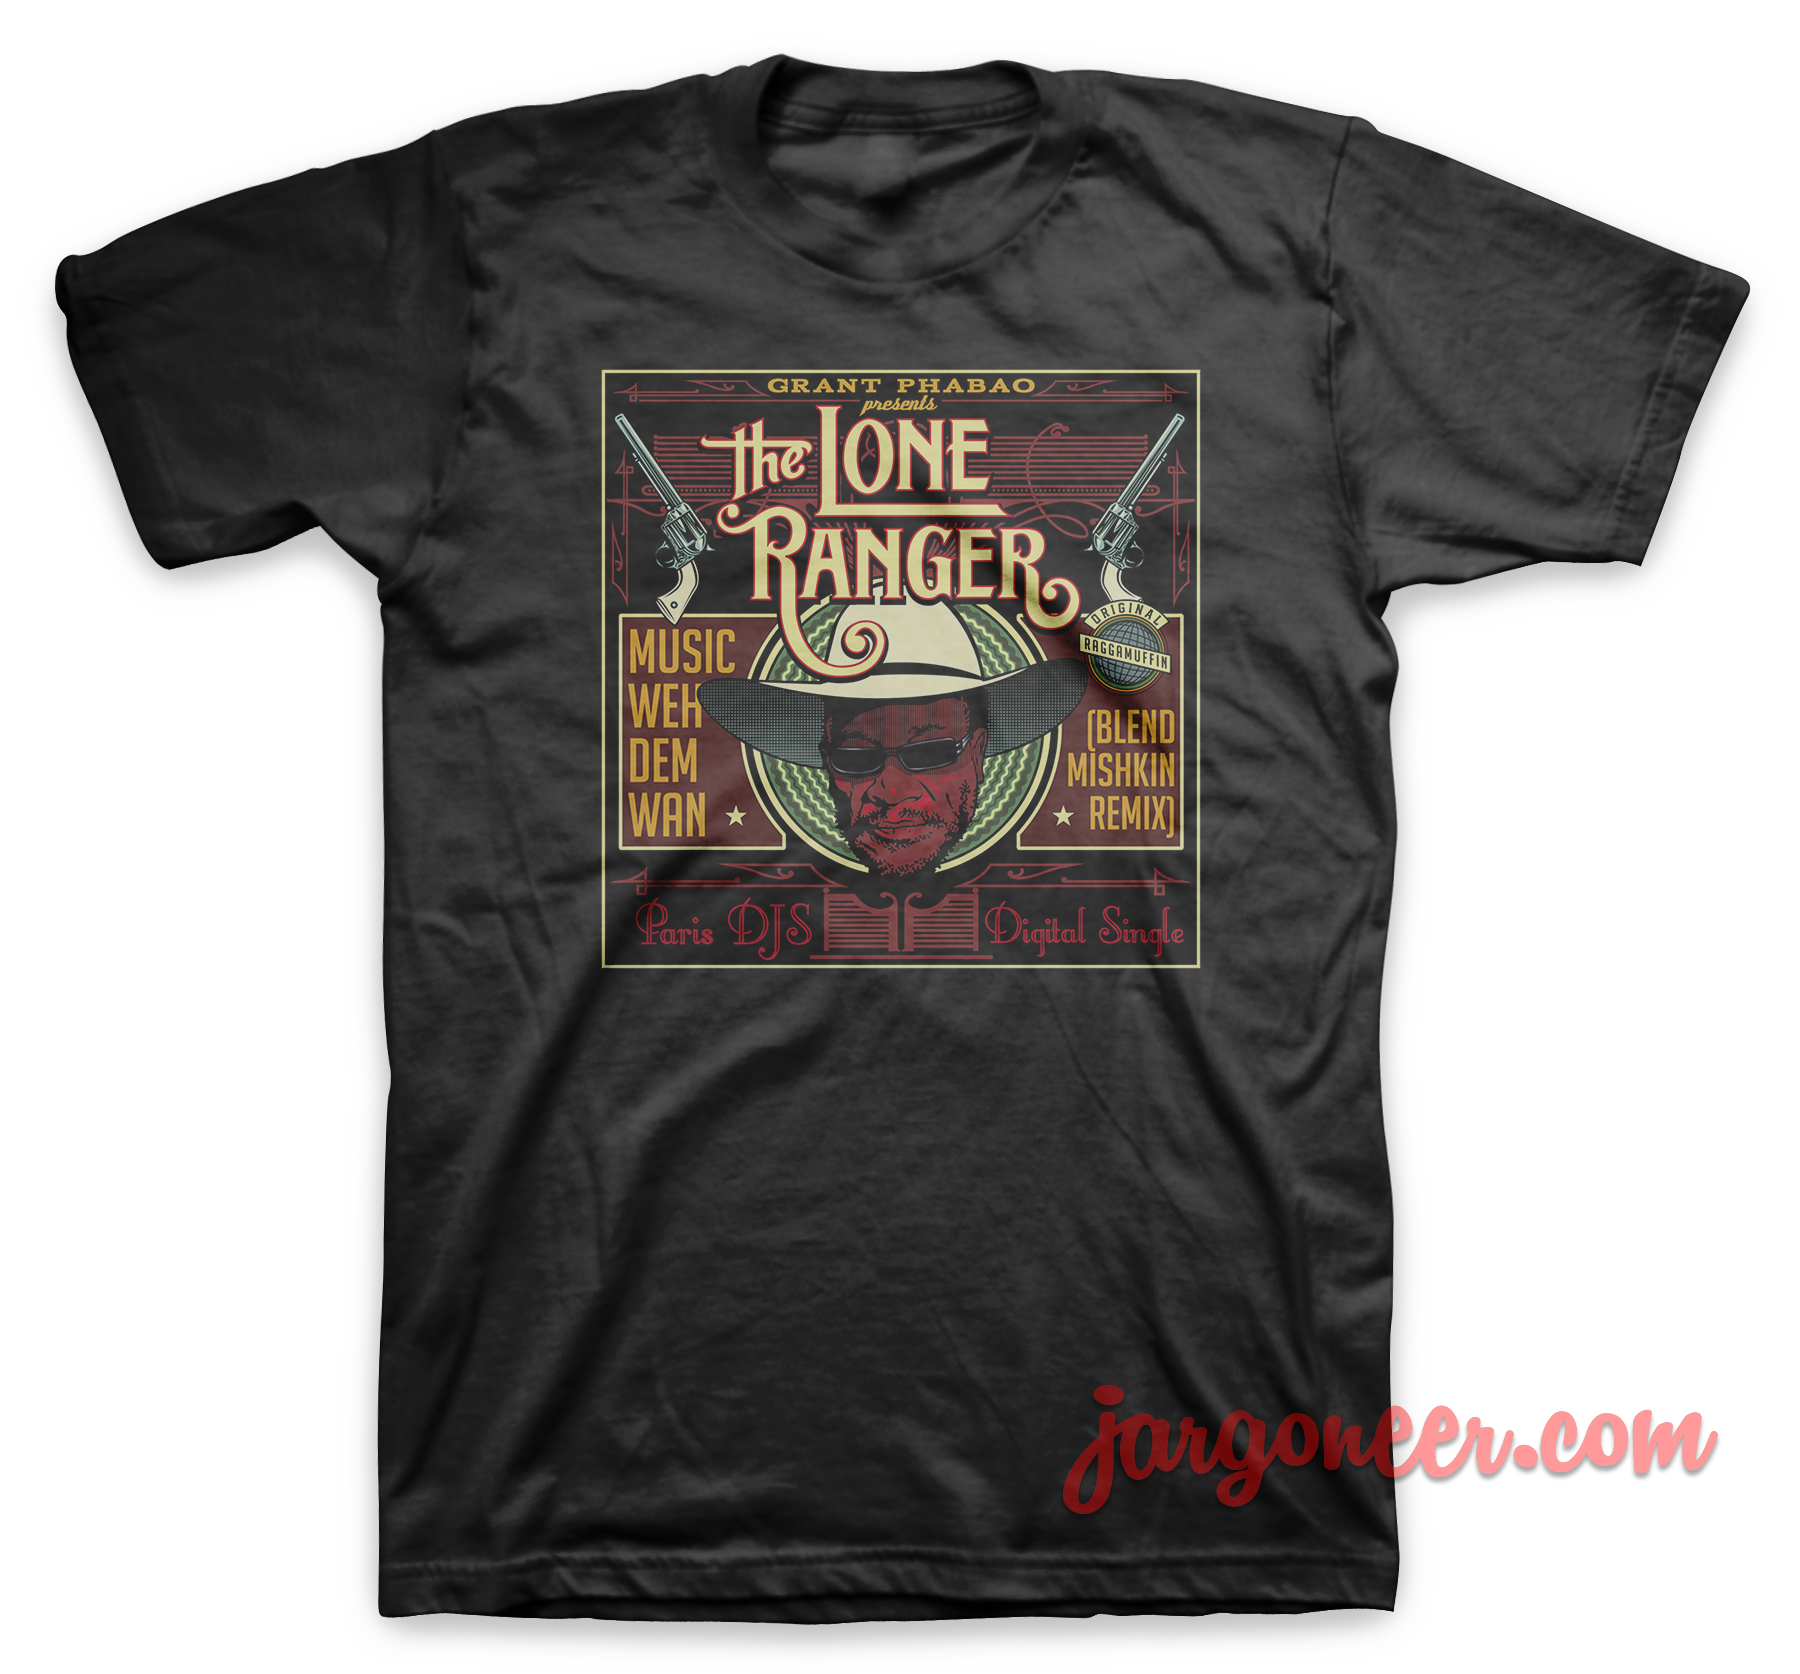 The Lone Ranger Weh Dem Wan Black T Shirt - Shop Unique Graphic Cool Shirt Designs